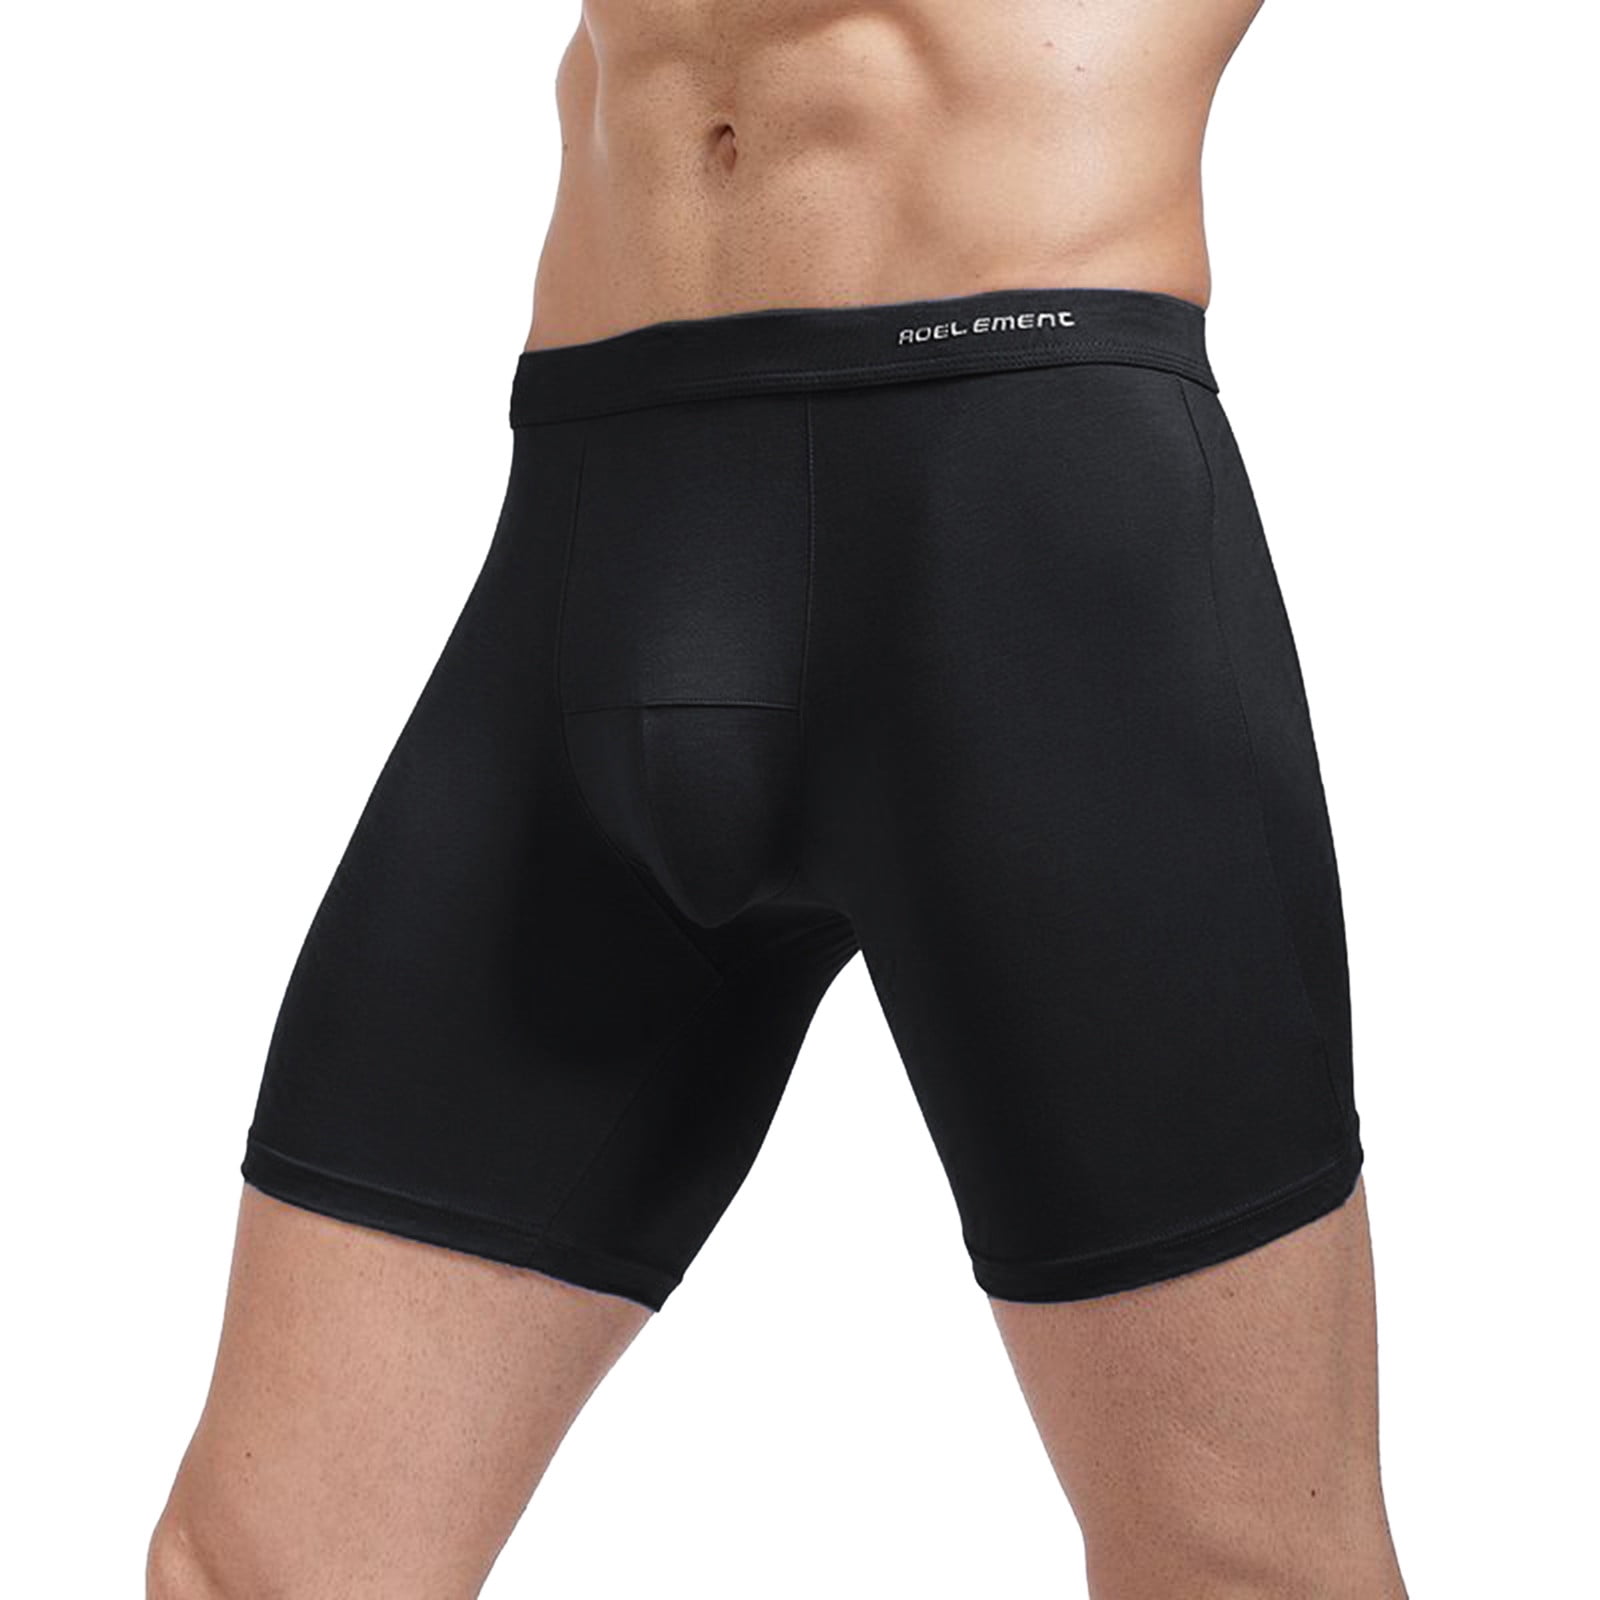 Pimfylm Cotton Underwear For Men High Waist Men's Micro Speed Dri No Show  Brief Black X-Large